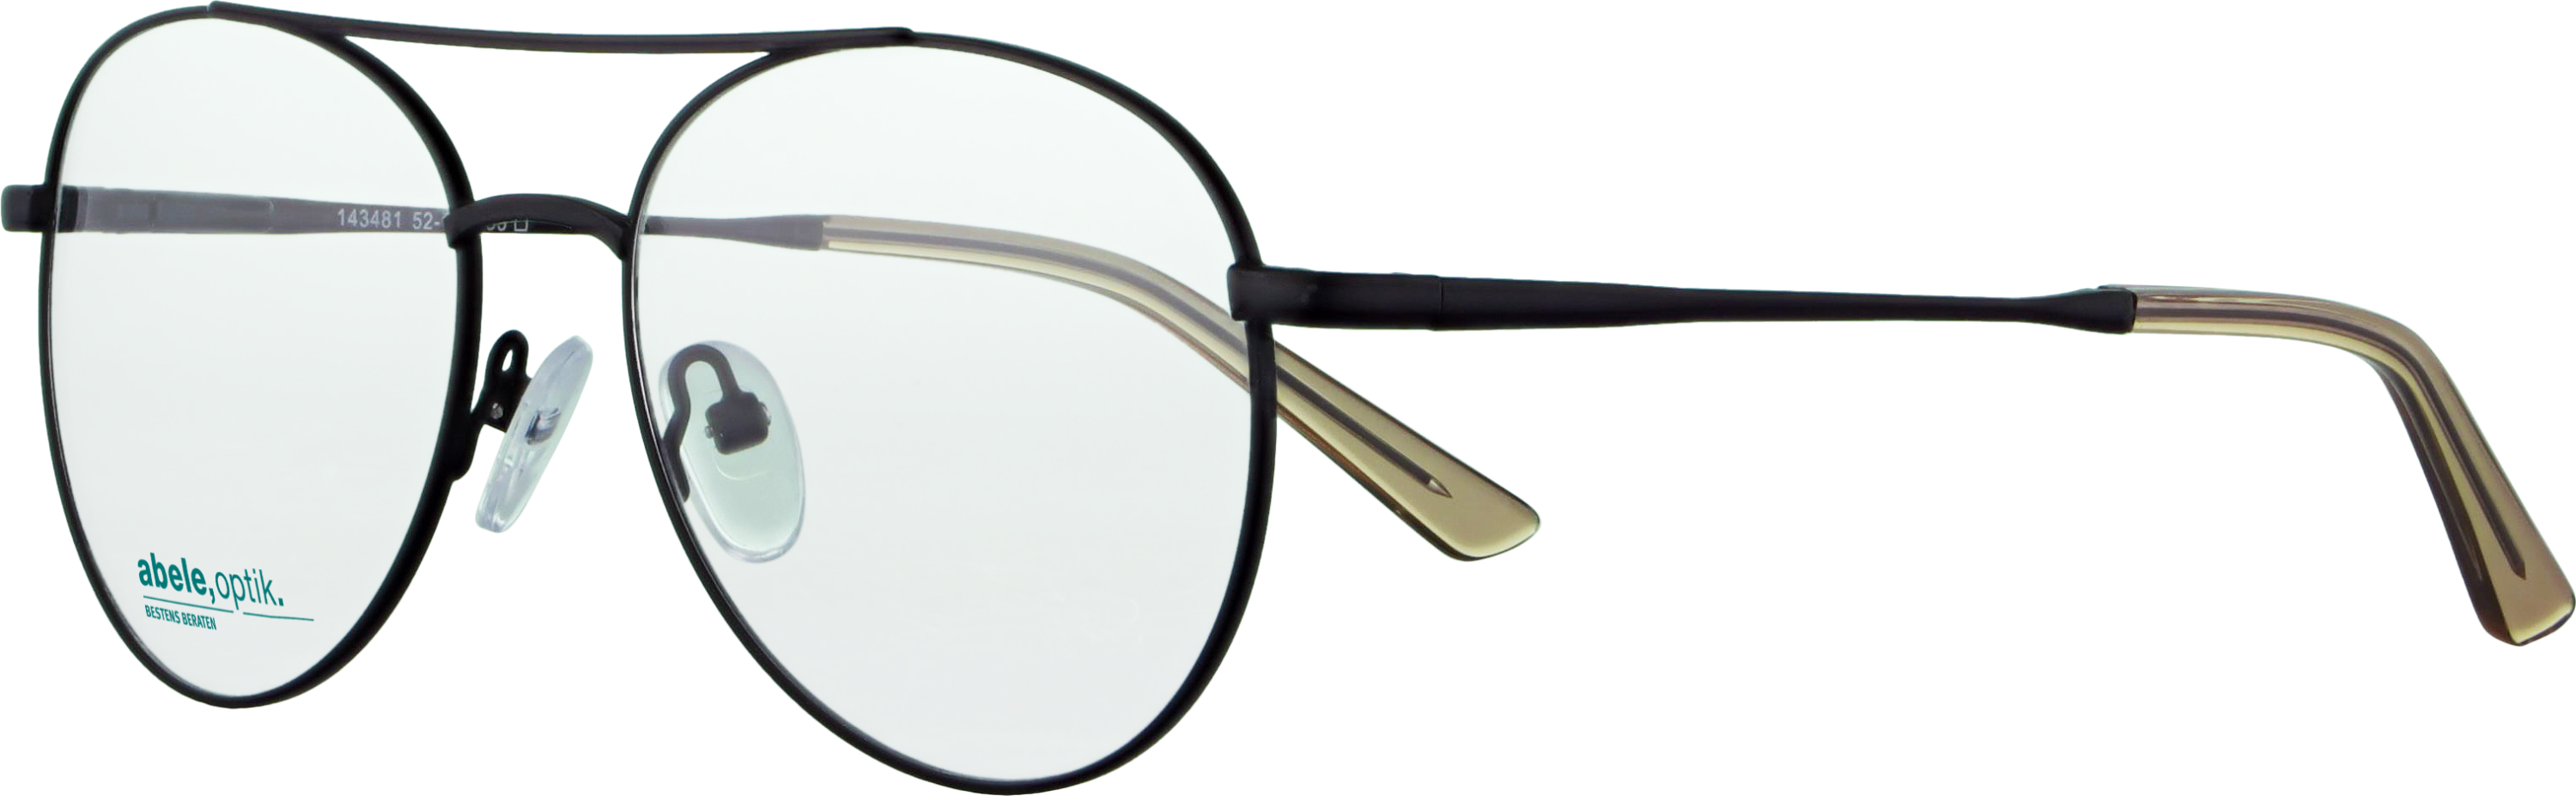 Das Bild zeigt die Korrektionsbrille 143481 von Abele Optik in schwarz matt.